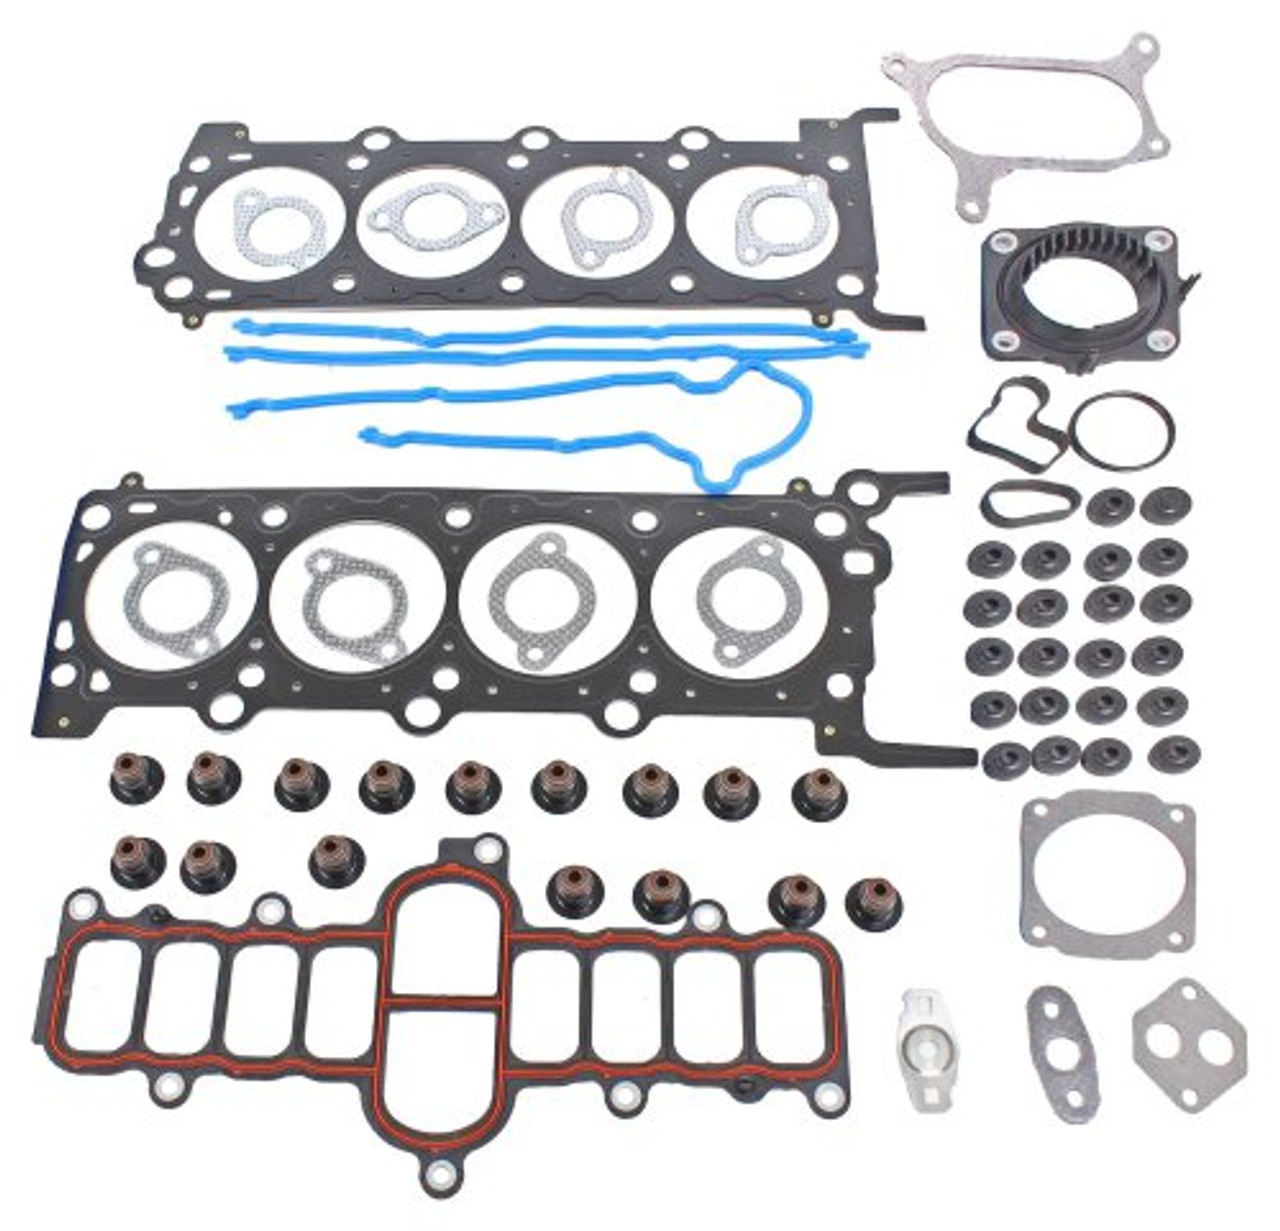 Head Gasket Set - 2014 Ford E-150 4.6L Engine Parts # HGS4221ZE6